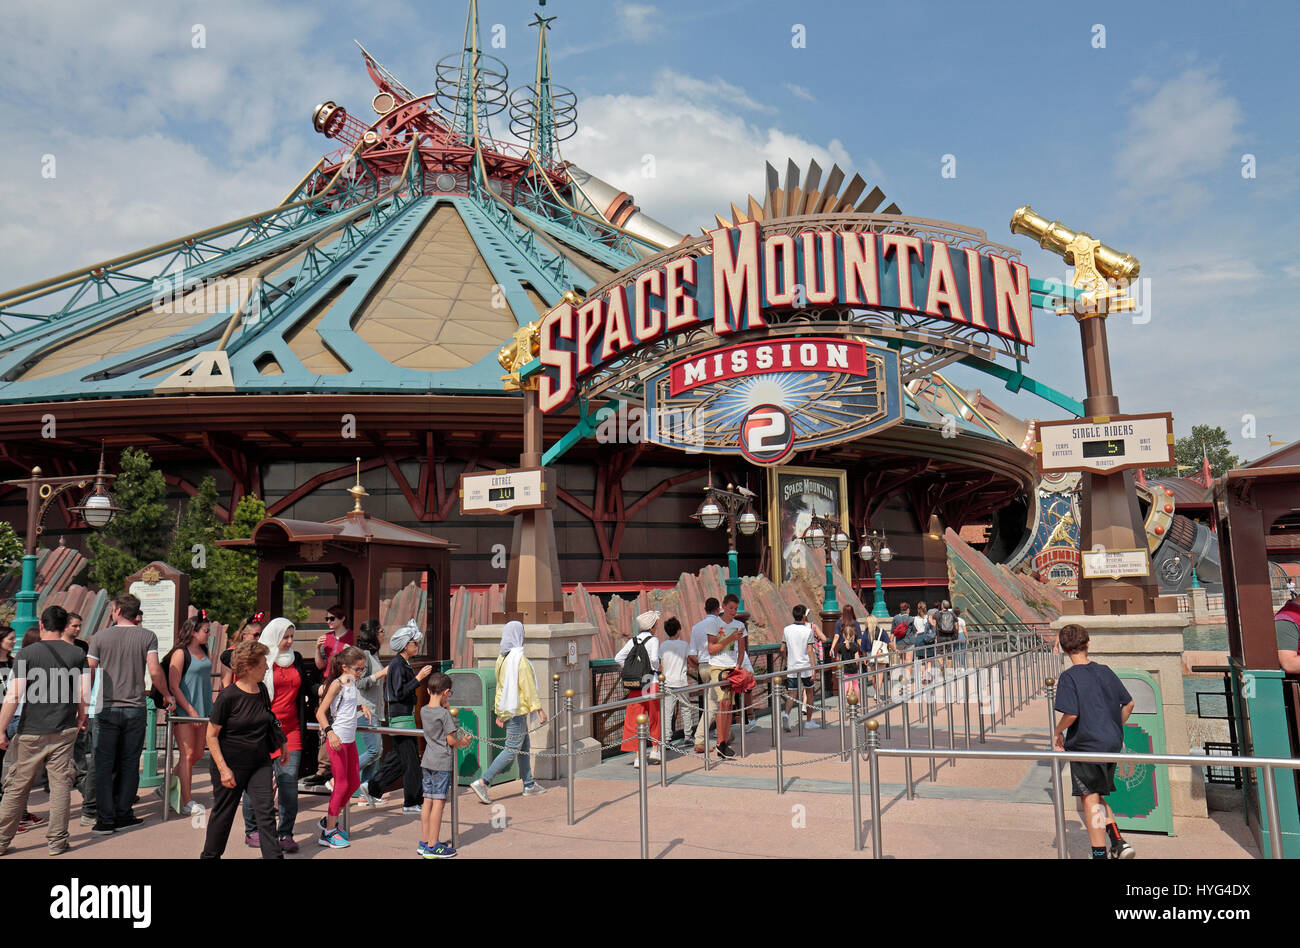 Le Space Mountain Mission 2 ride à Disneyland Paris, Marne-la-Vallée, près de Paris, France. Banque D'Images